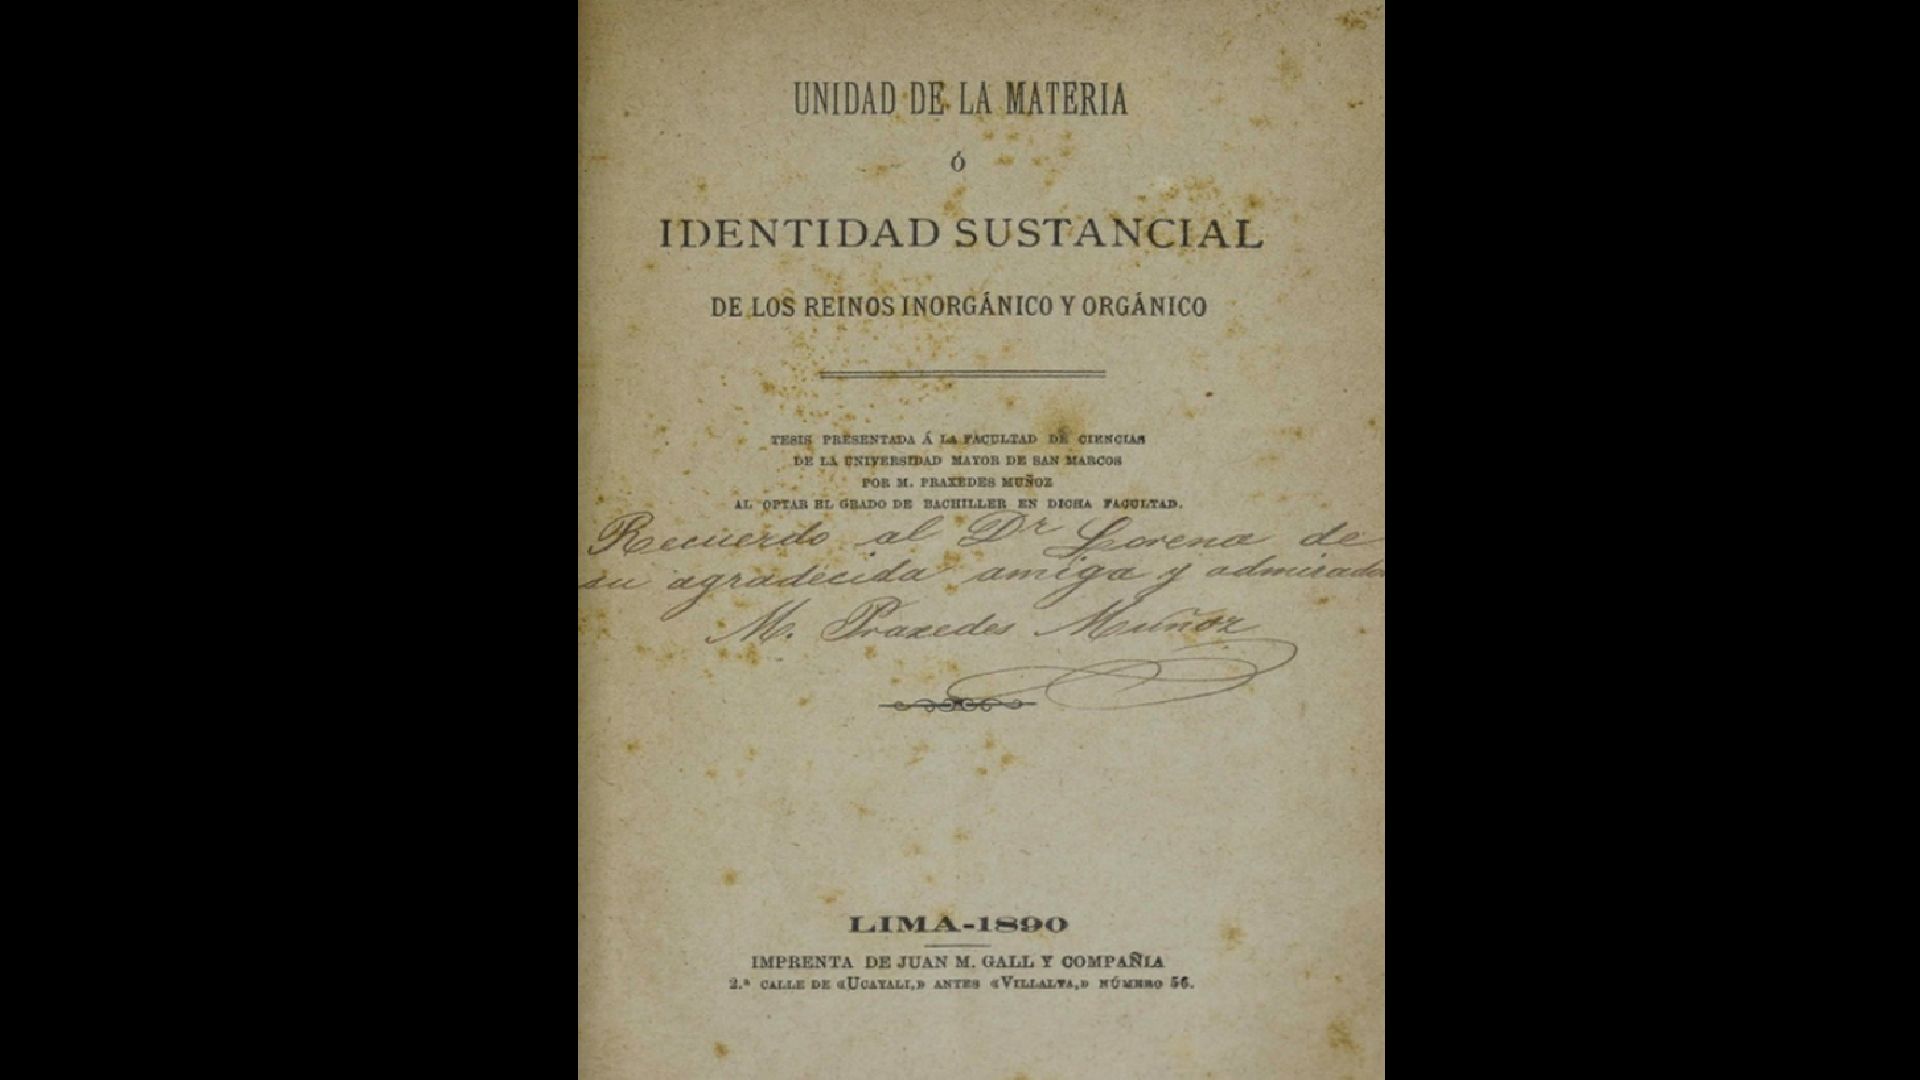 Tesis “La unidad de la materia o identidad de origen de los reinos inorgánico y orgánico” de Margarita Práxedes Muñoz (Archivo de la Biblioteca Nacional del Perú).